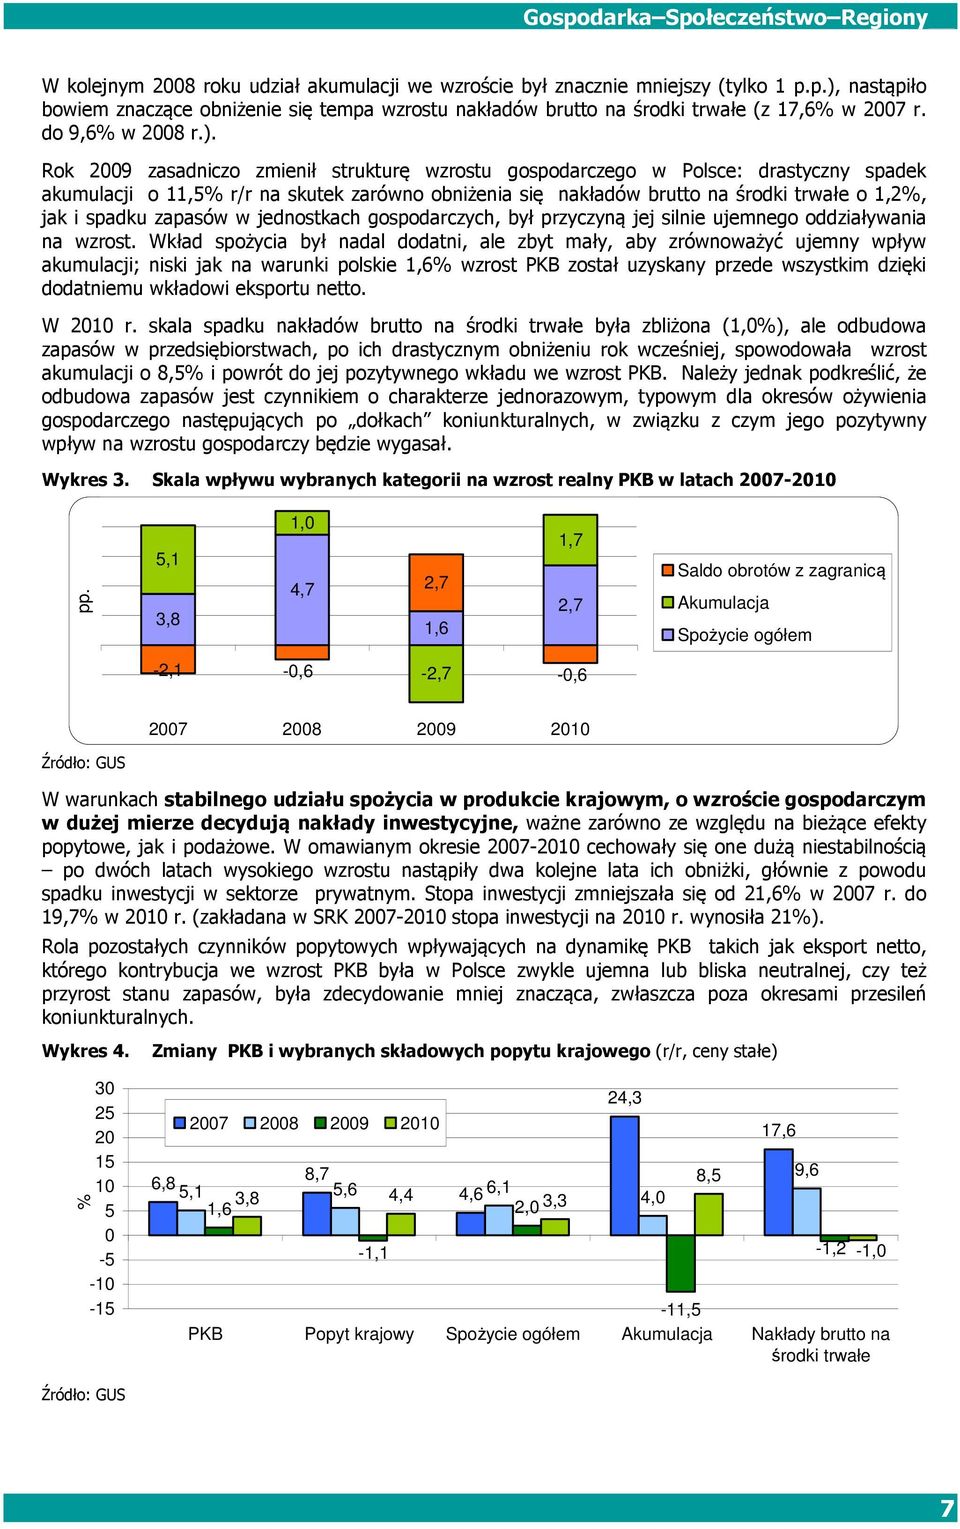 Rok 2009 zasadniczo zmienił strukturę wzrostu gospodarczego w Polsce: drastyczny spadek akumulacji o 11,5% r/r na skutek zarówno obniżenia się nakładów brutto na środki trwałe o 1,2%, jak i spadku